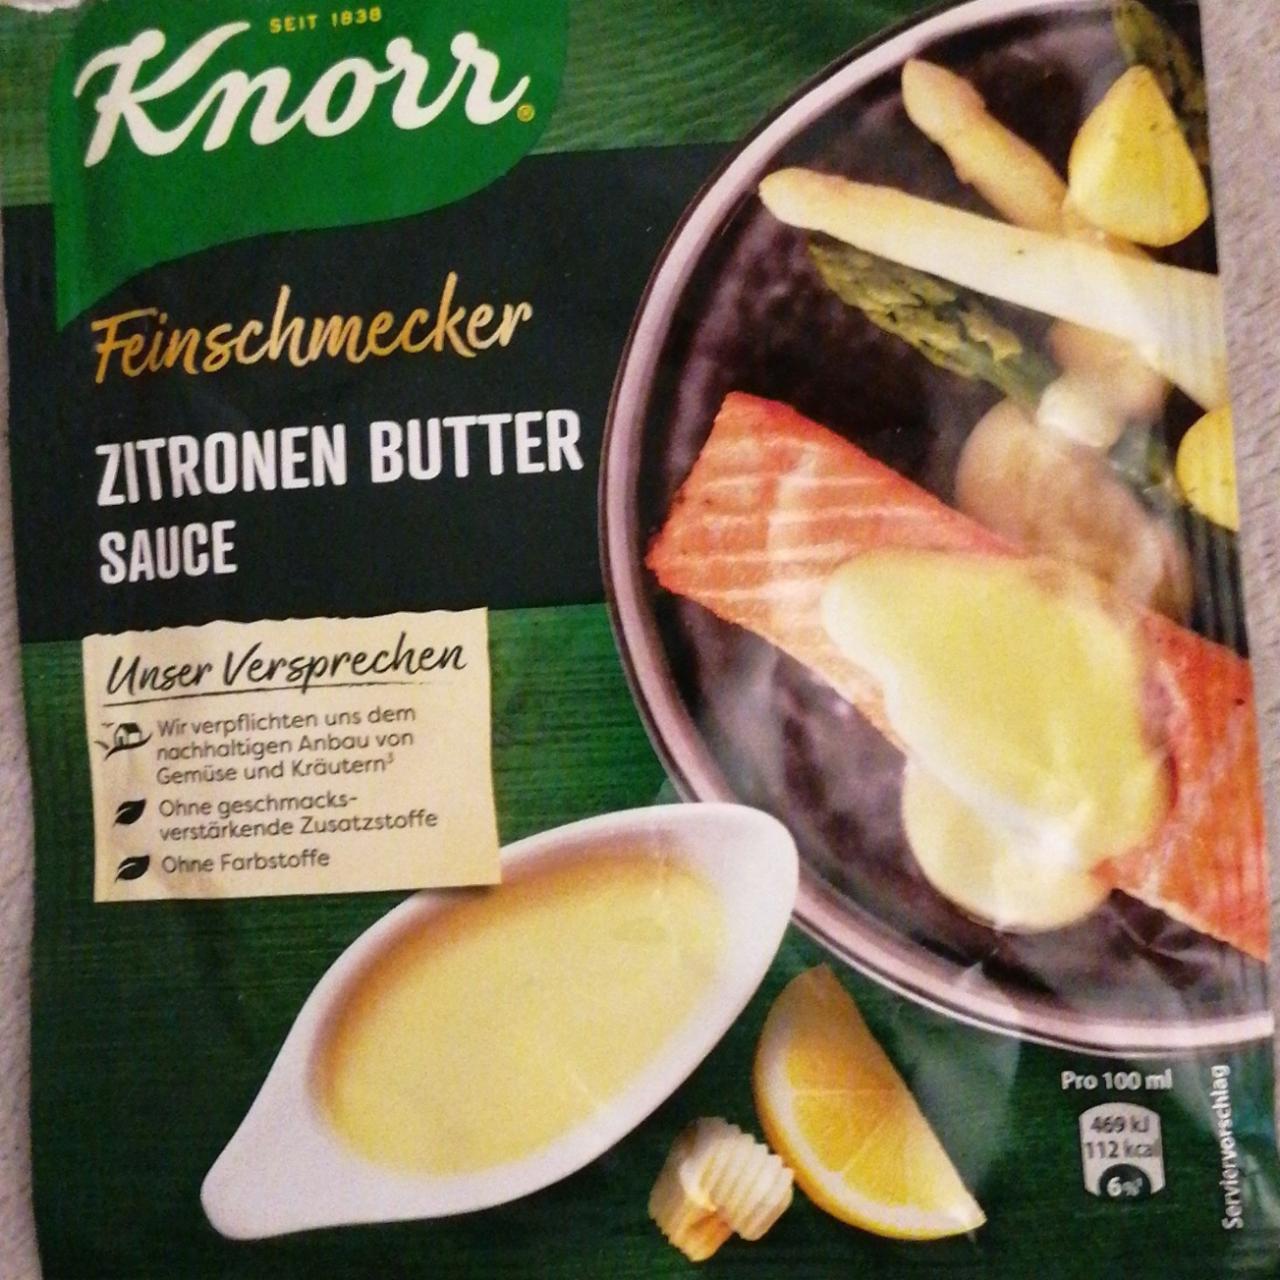 Fotografie - Feinschmecker Zitronen butter sauce Knorr